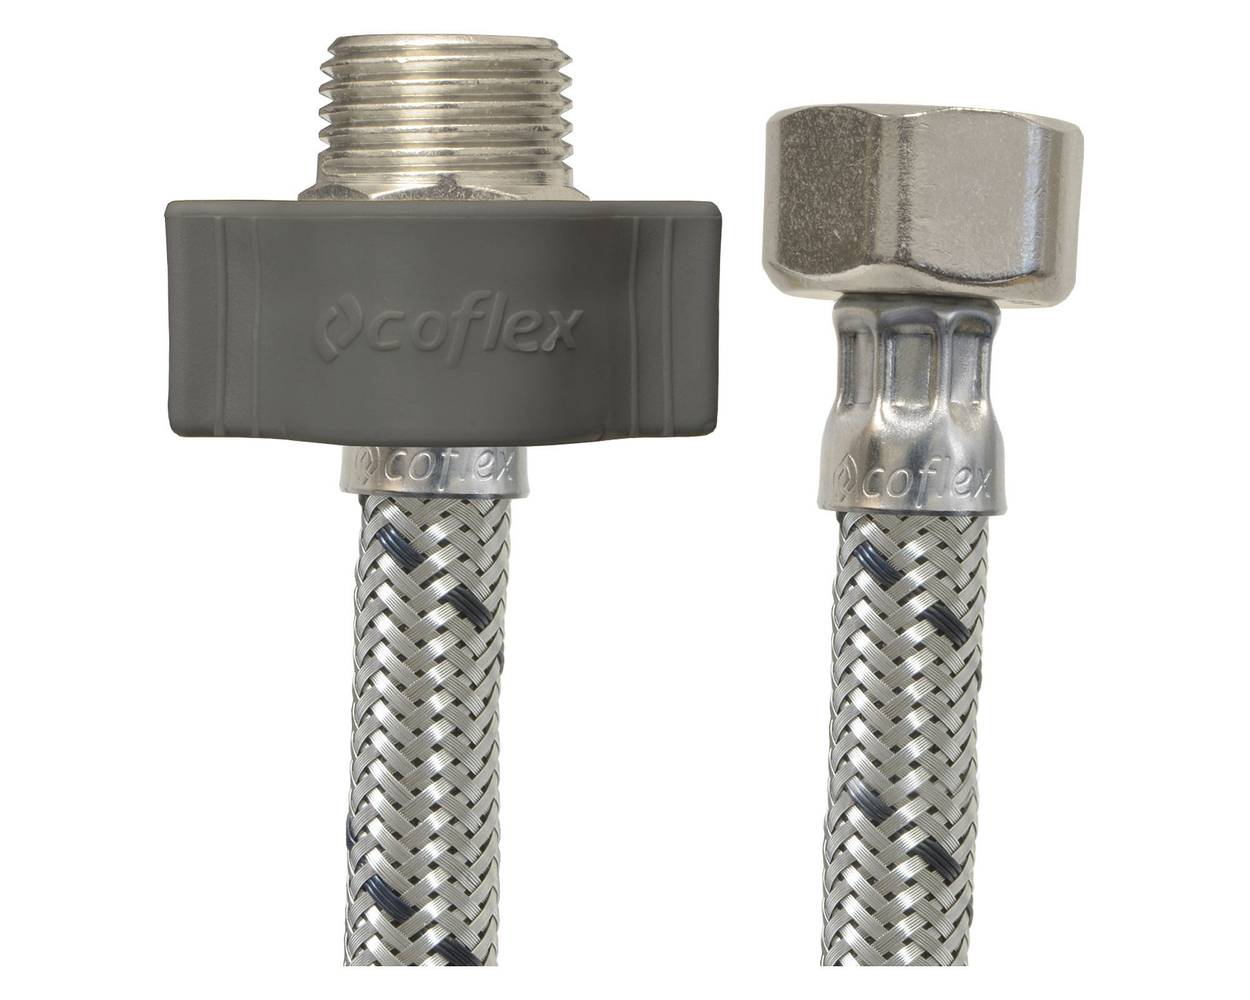 Coflex flexible para agua 1/2" hi x 1/2" he (50 cm)